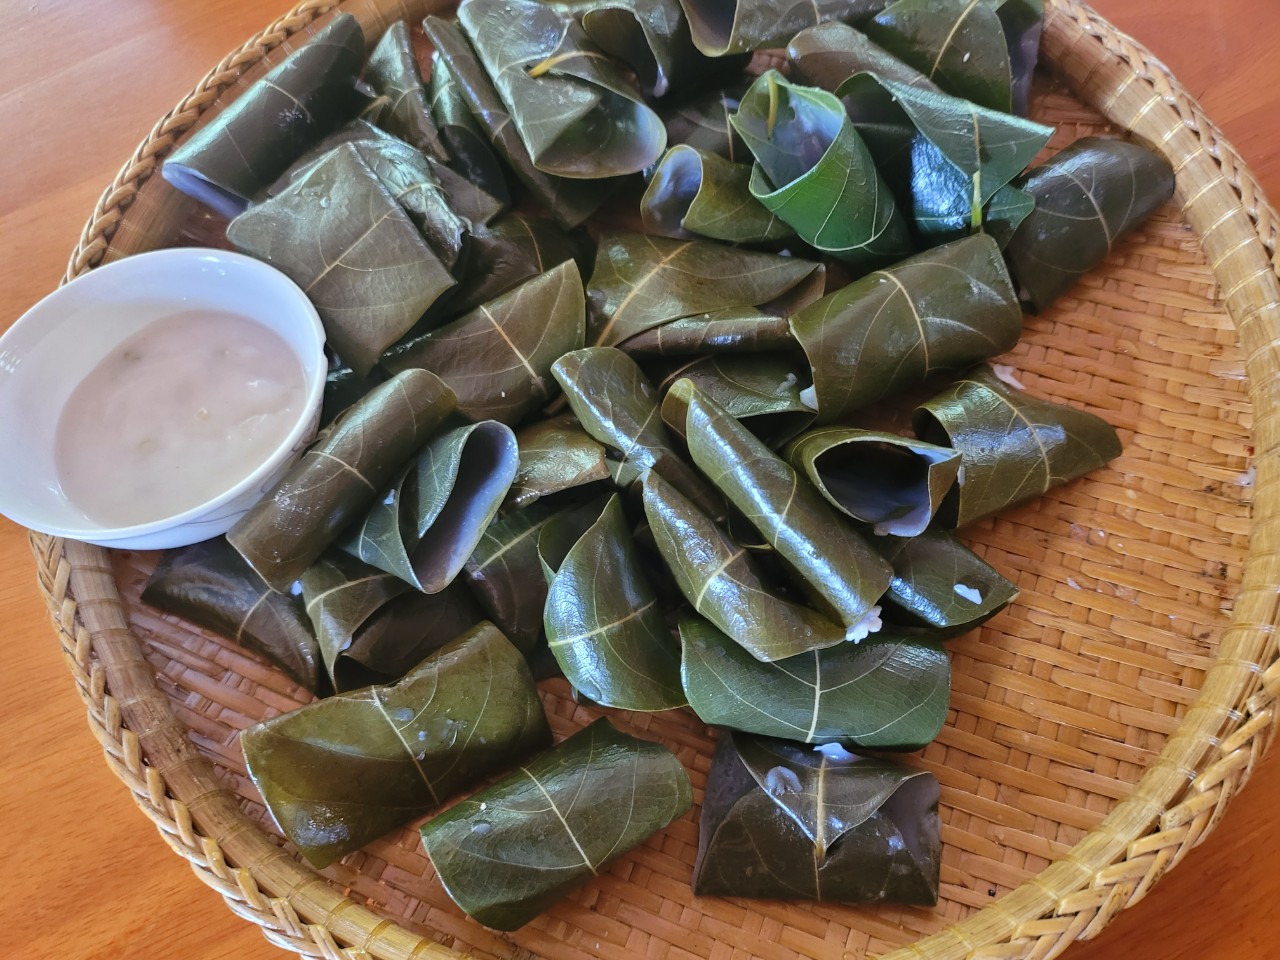 Bánh lá mít là một trong những món ăn đầy hương vị và mang đậm chất dân dã của miền quê Việt Nam. Nhìn hình ảnh liên quan, bạn sẽ cảm nhận được vị ngon tuyệt vời của bánh lá mít chắc chắn sẽ khiến bạn \